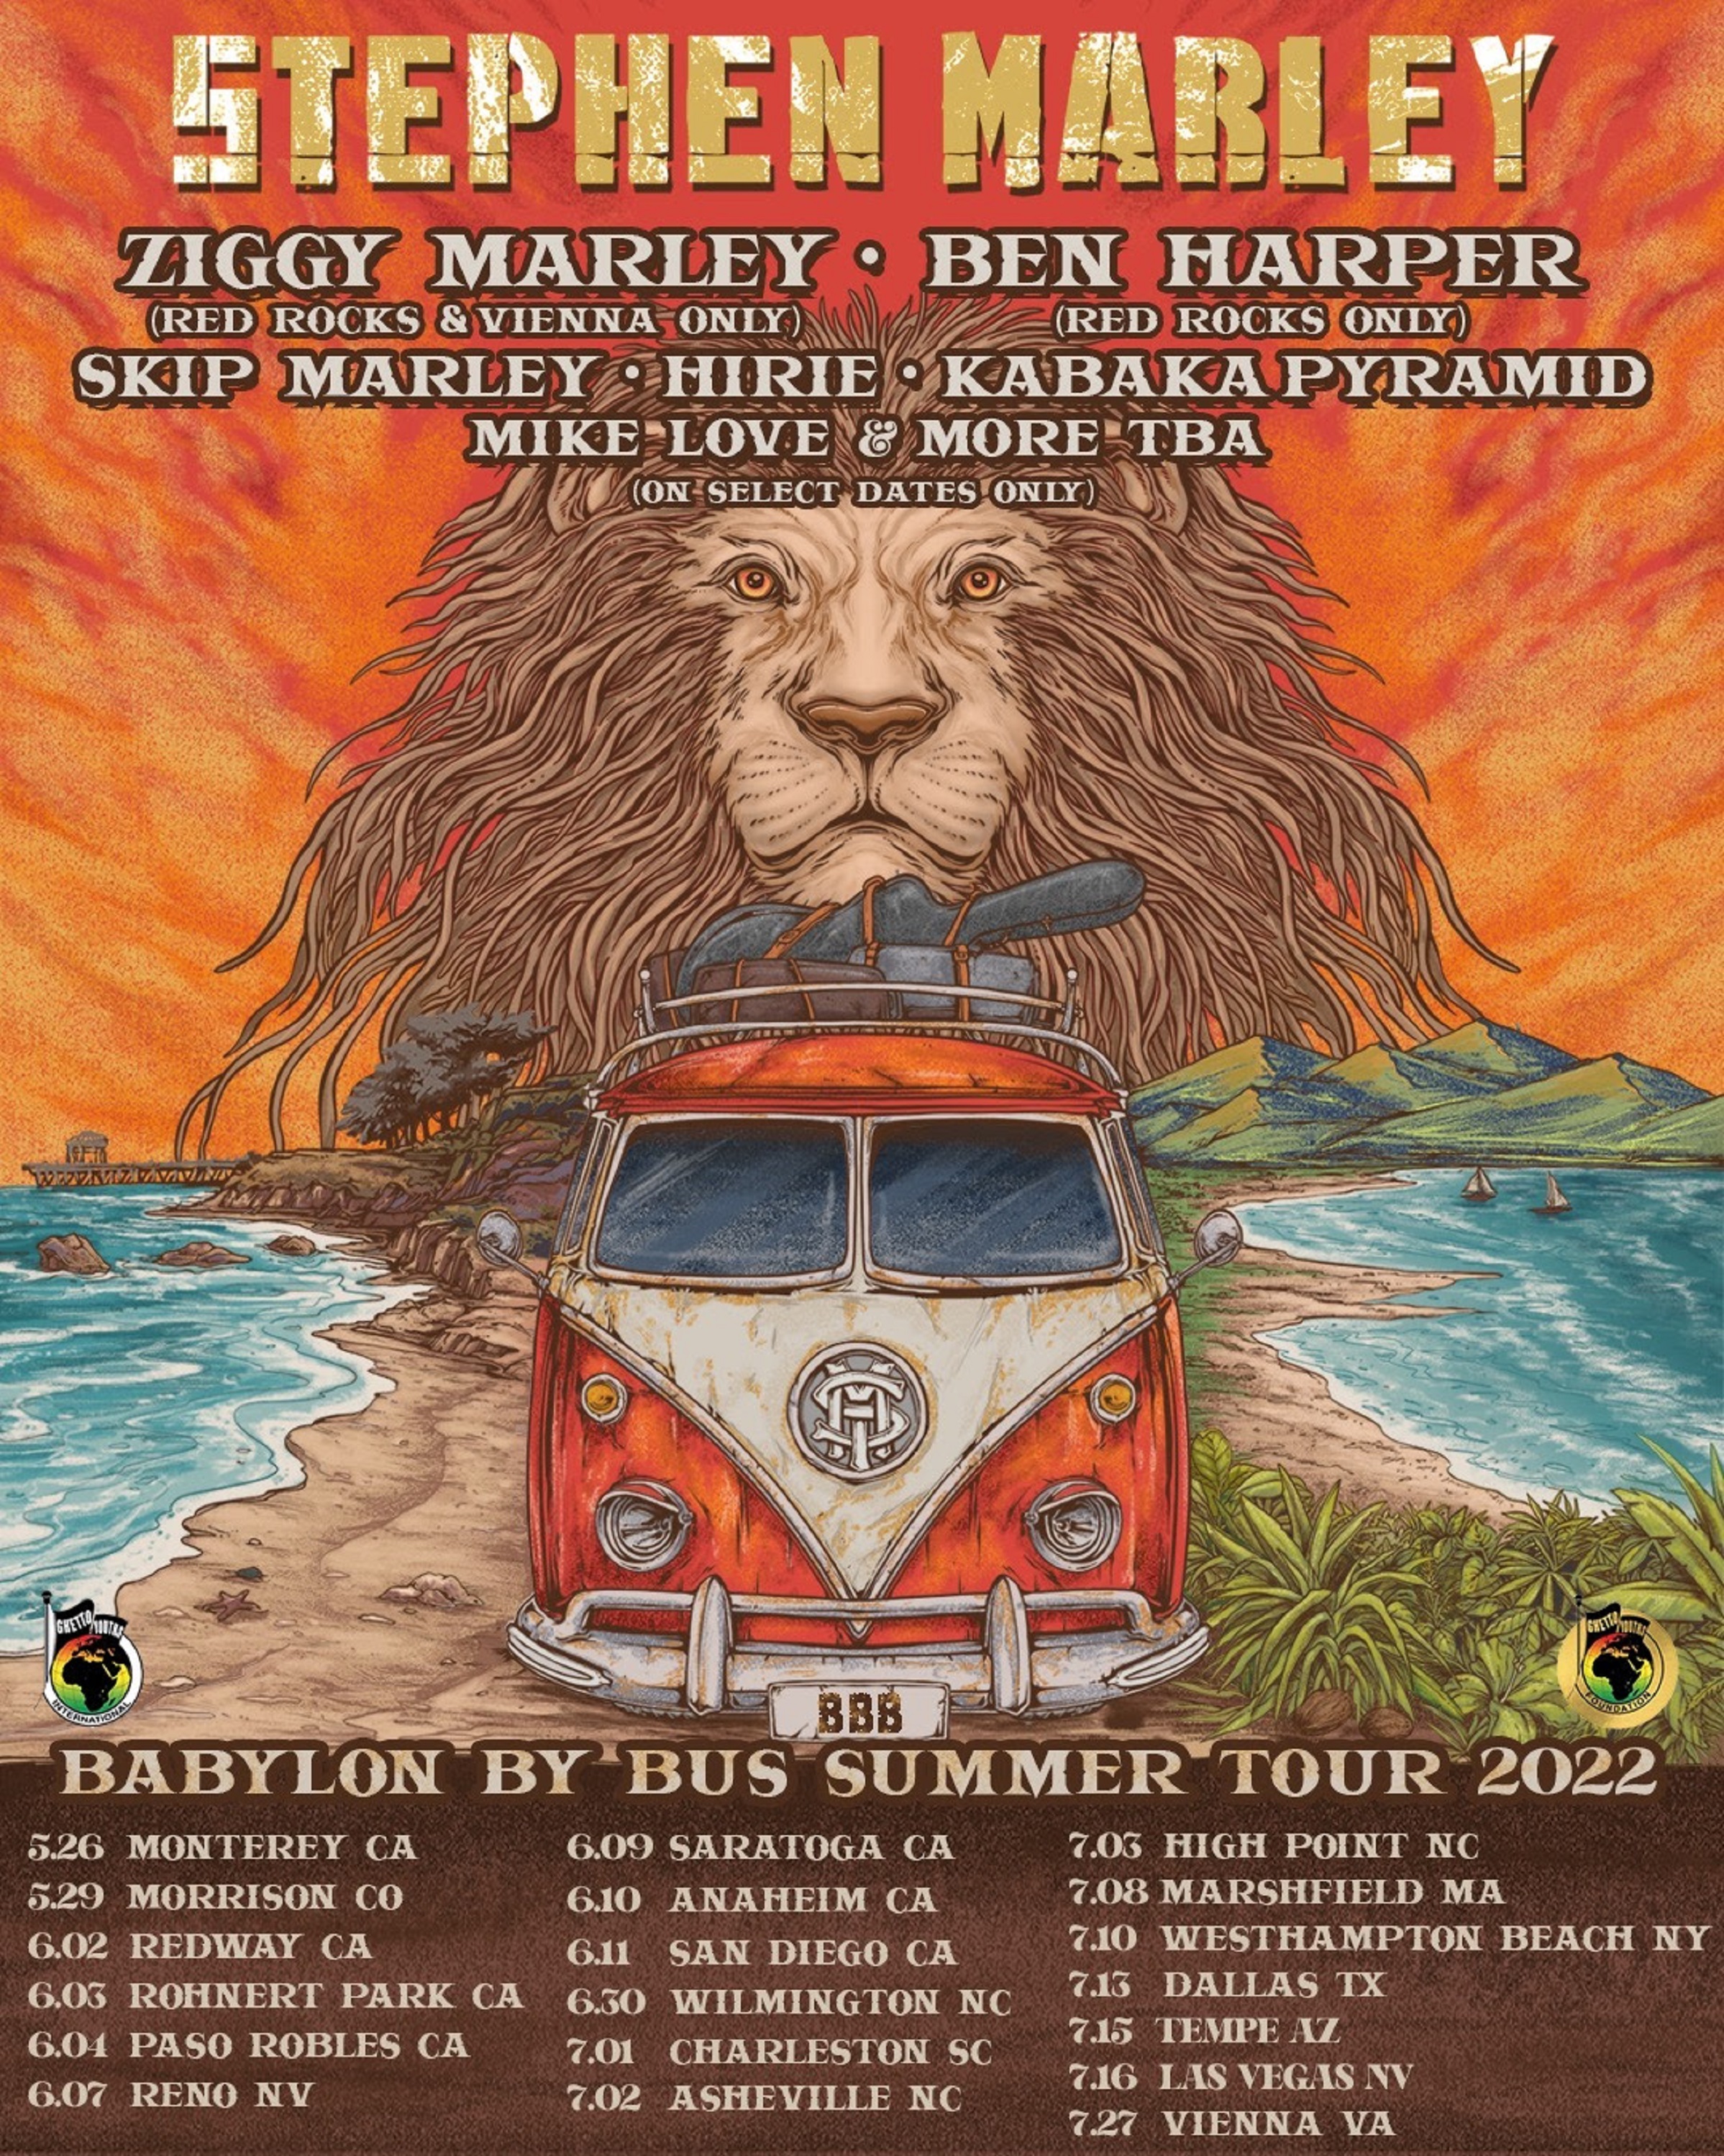 Stephen Marley Announces Babylon By Bus Summer Tour w / Ziggy Marley, Ben Harper, Skip Marley, Hirie & More!